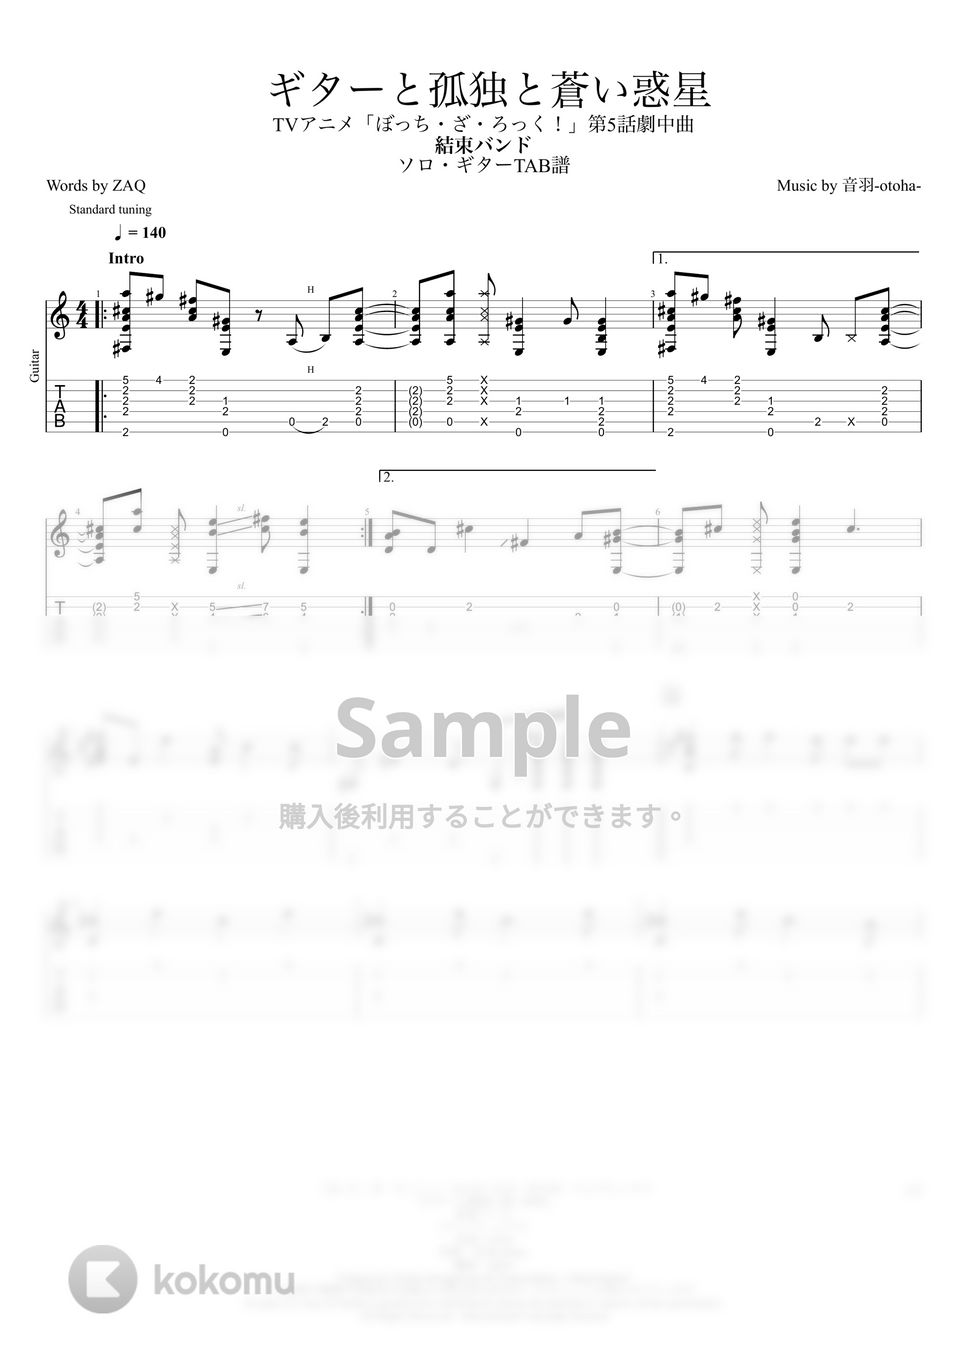 結束バンド - ギターと孤独と蒼い惑星【ソロギターTAB譜】 by 伊田 マナブ